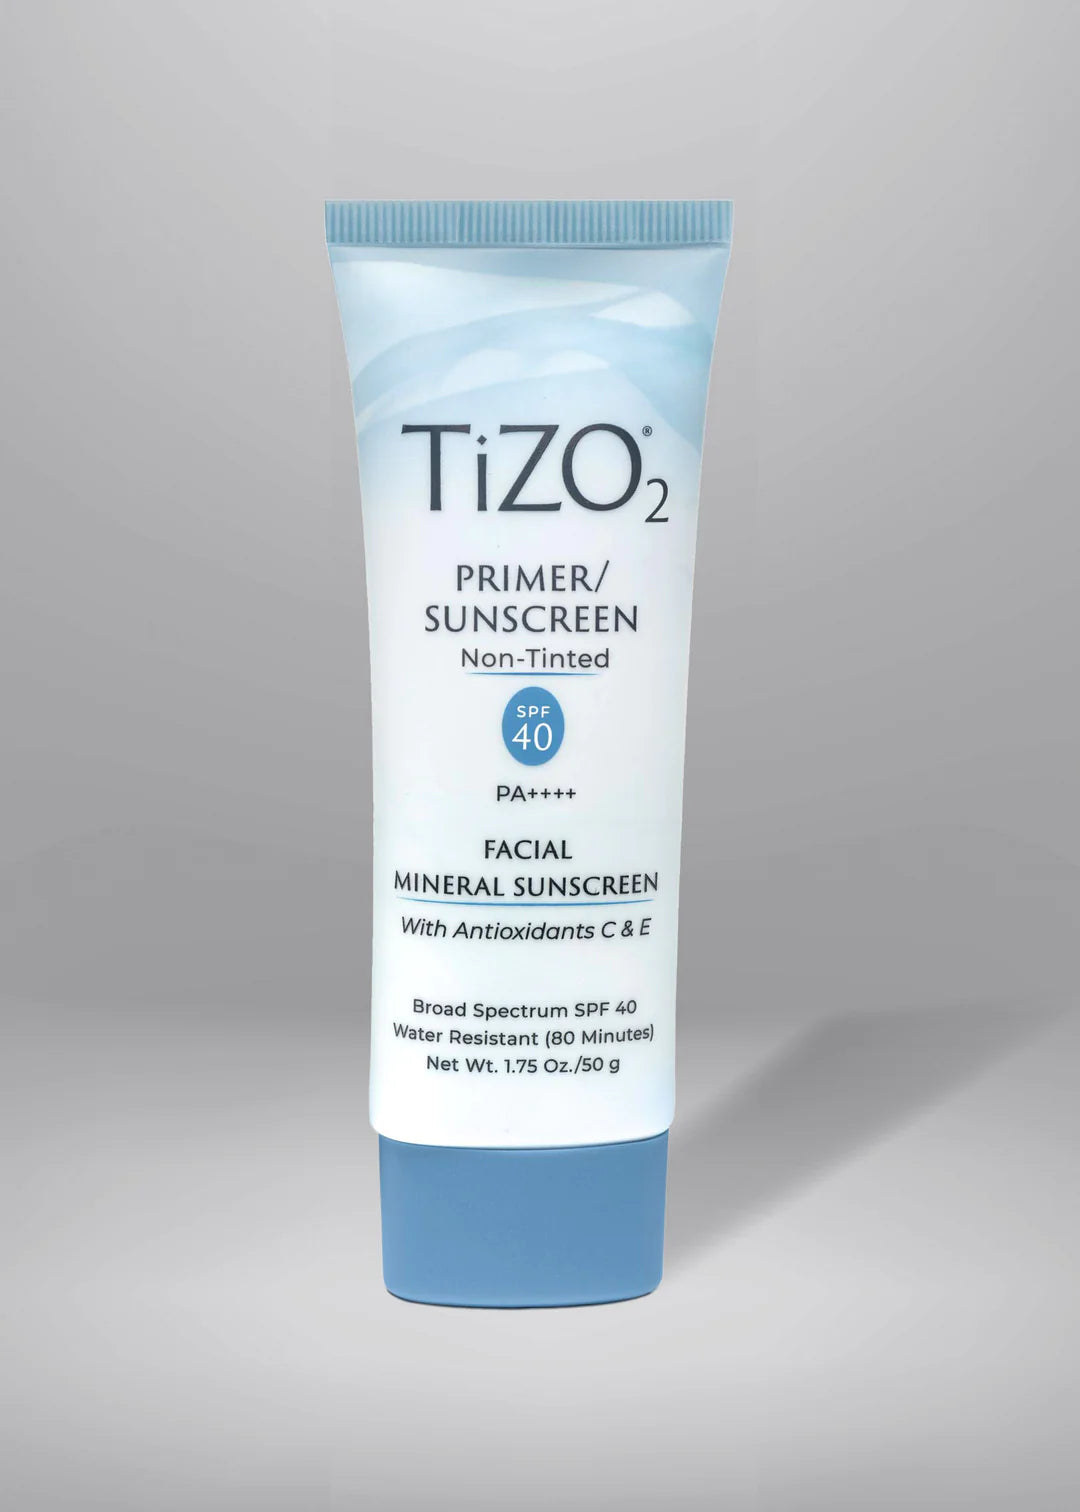 TiZO2 Facial Primer SPF 40, non tinted